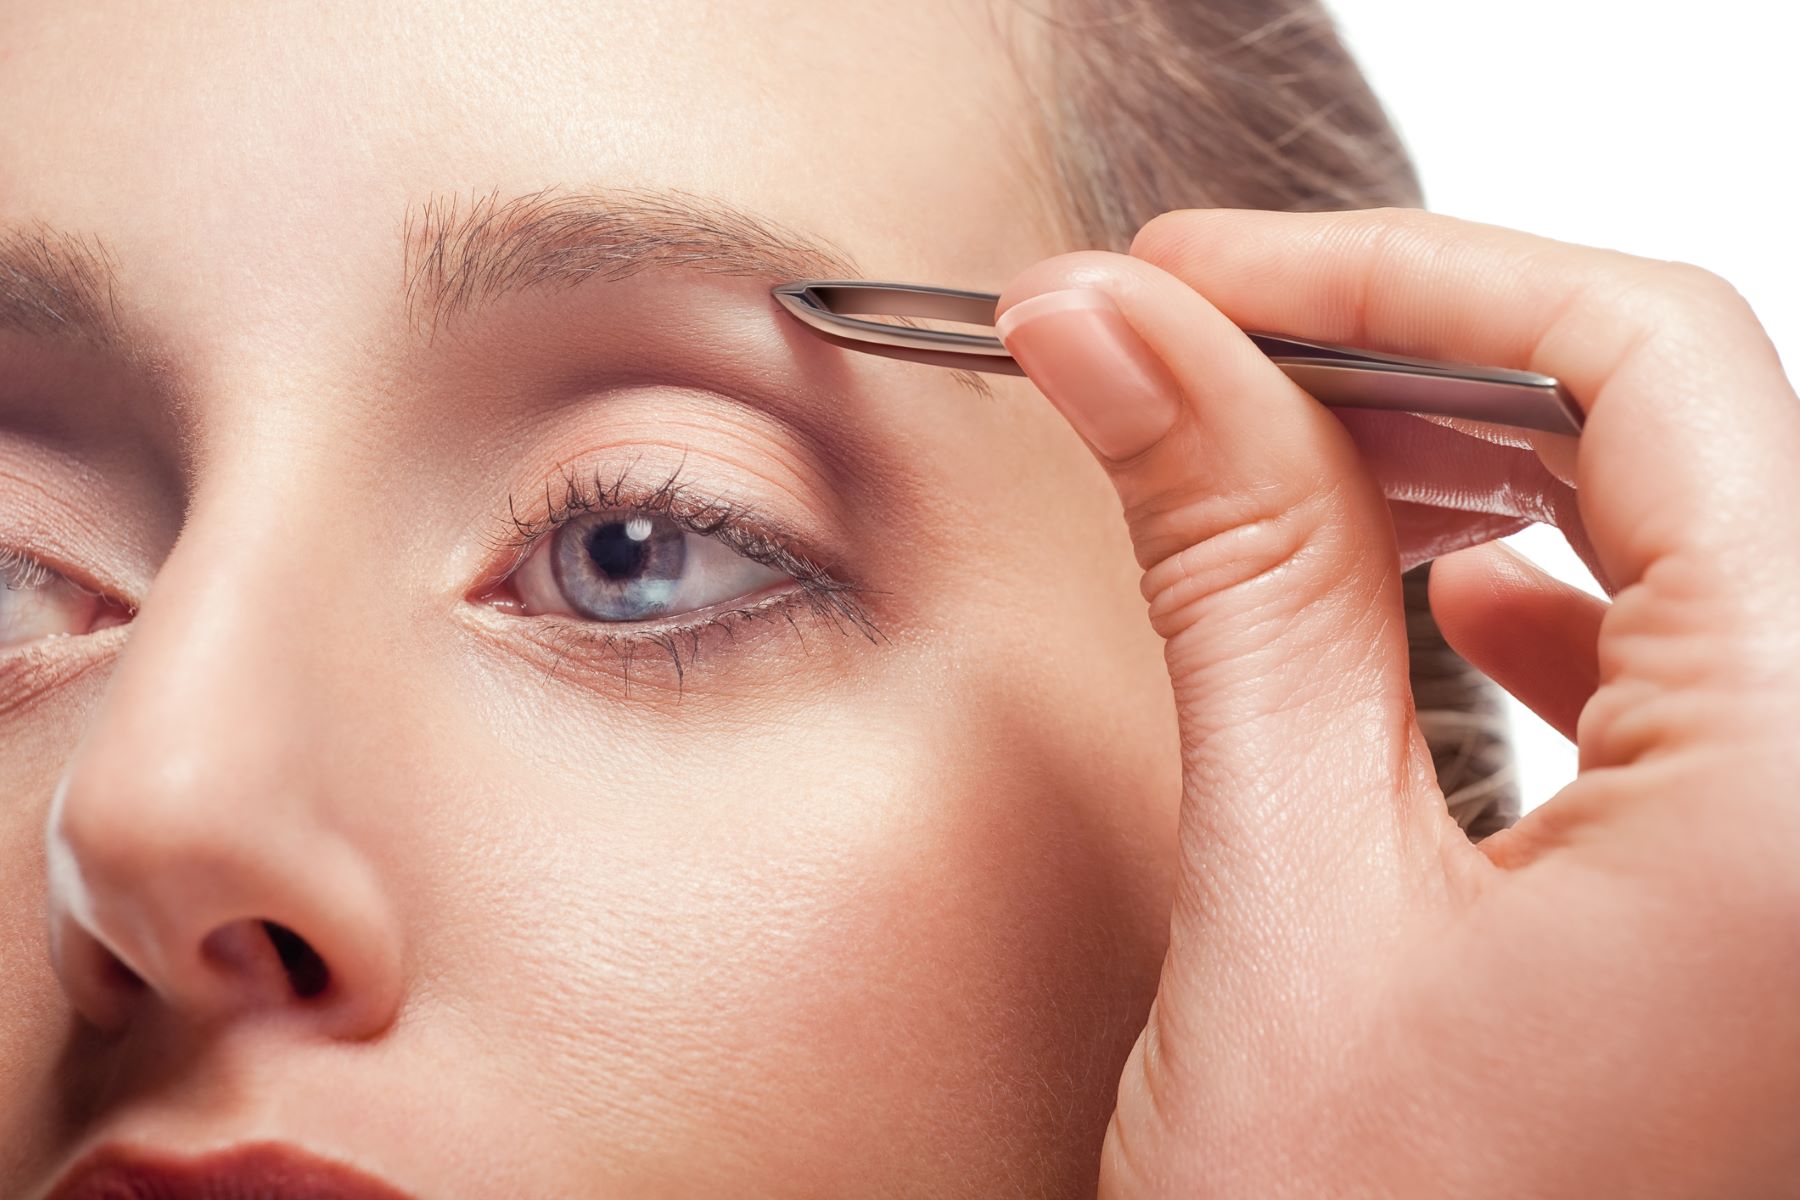 Woman grooming her eyebrows